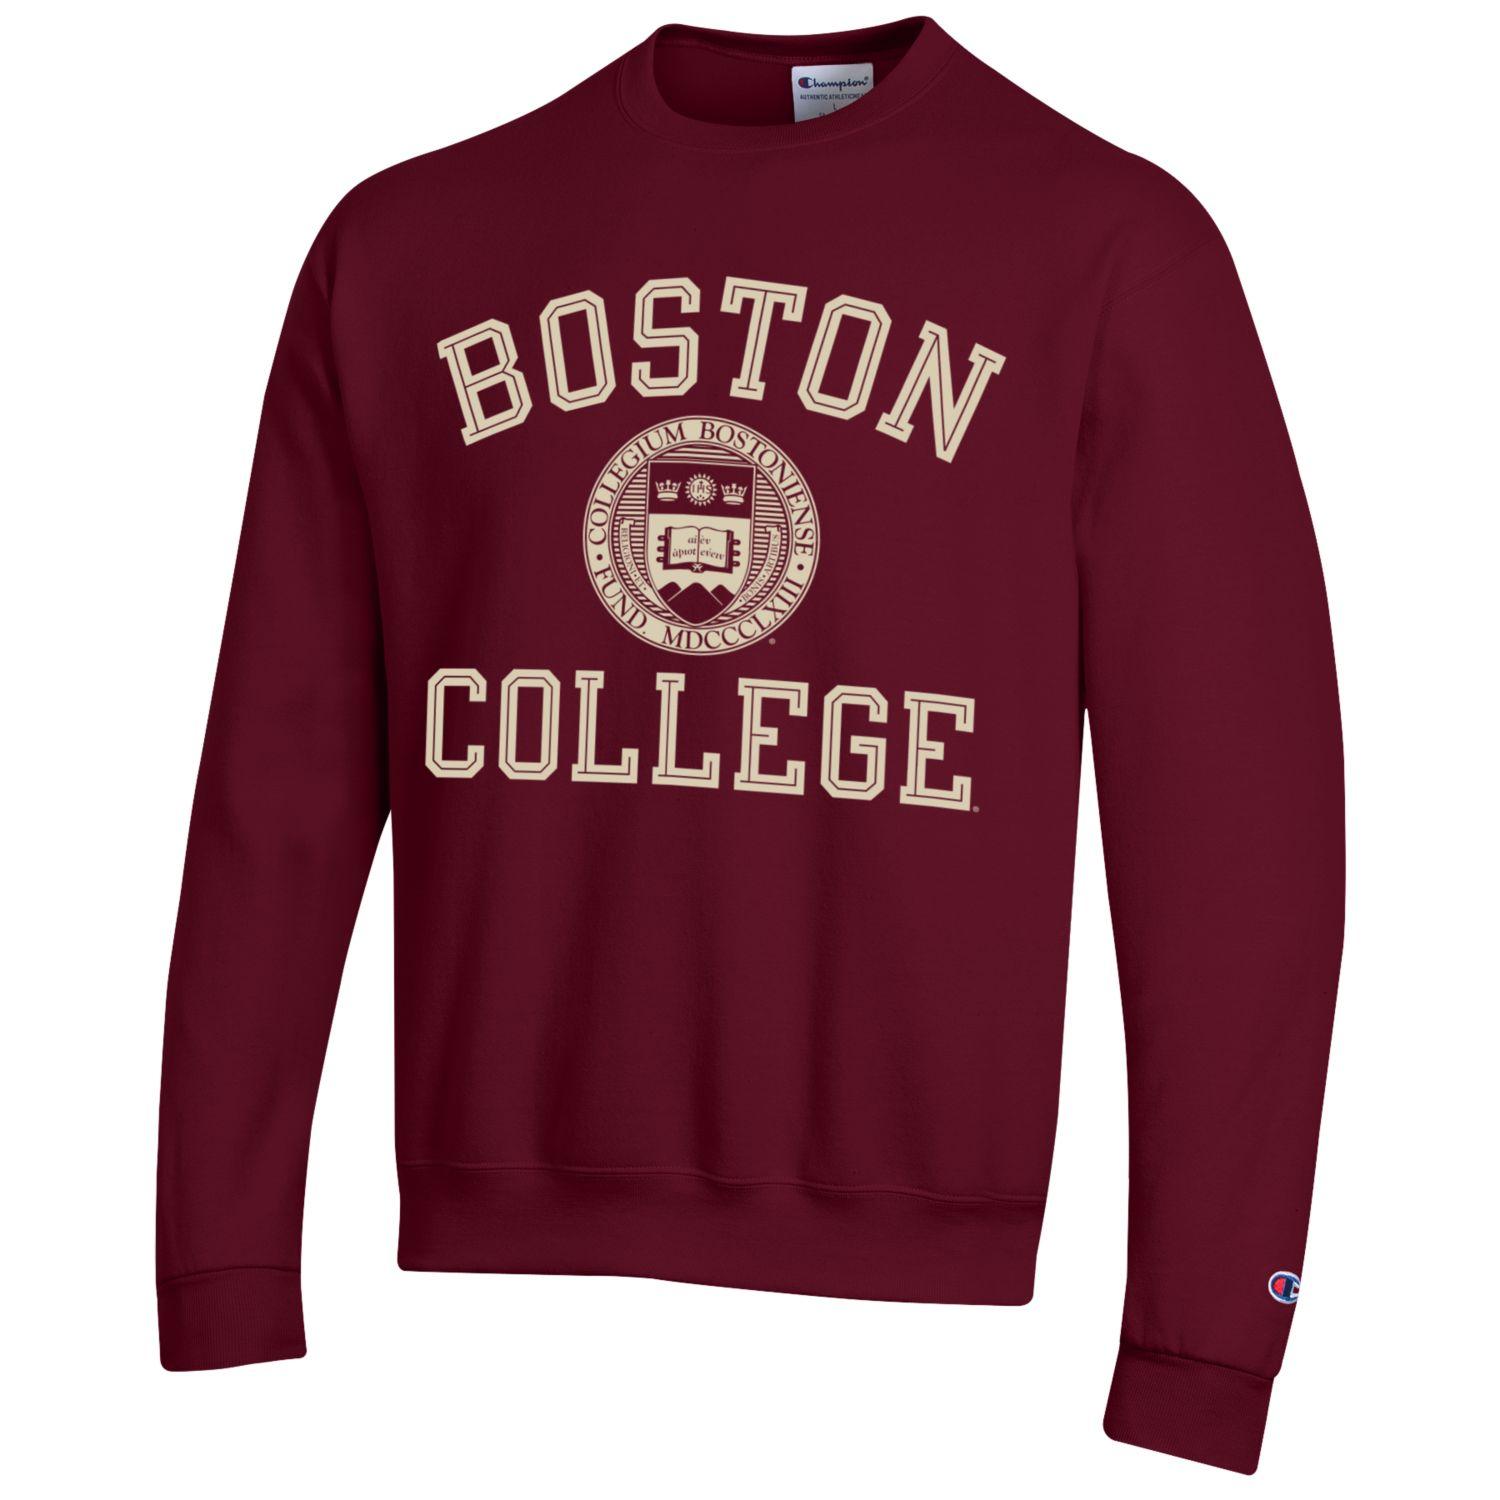 Boston College arch & seal Champion crew-neck sweatshirt-Maroon-Shop College Wear